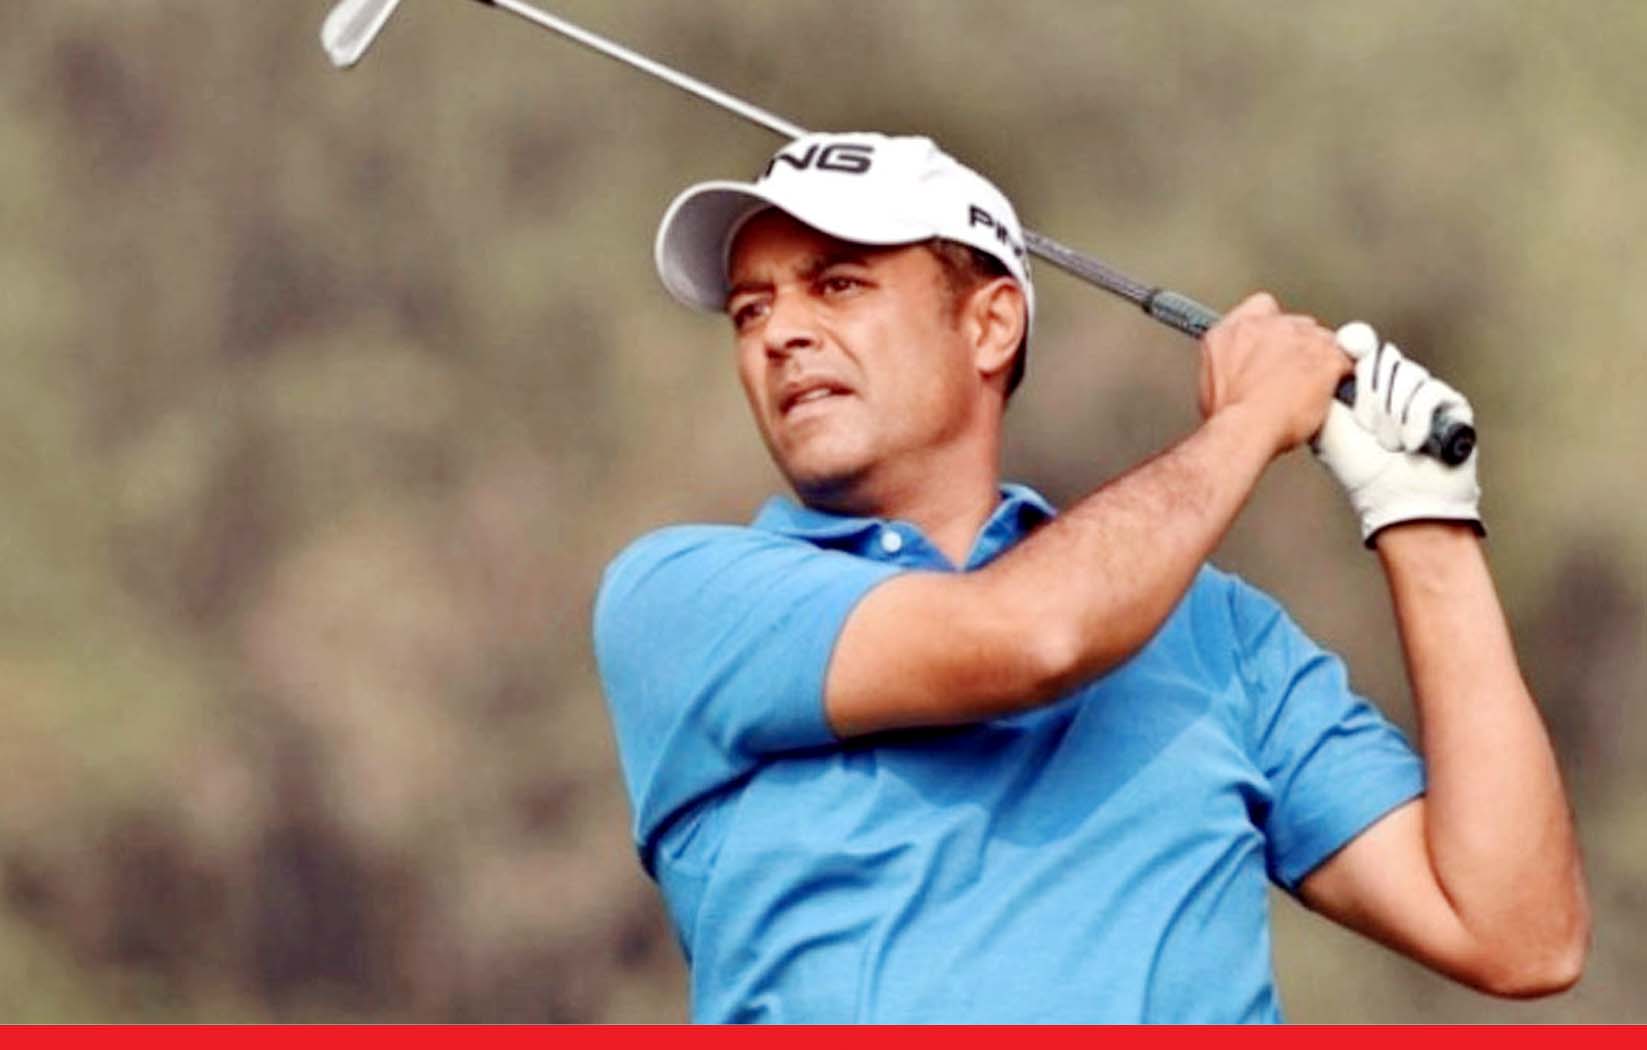 भारतीय गोल्फर अर्जुन अटवाल 34वें स्थान पर खिसके